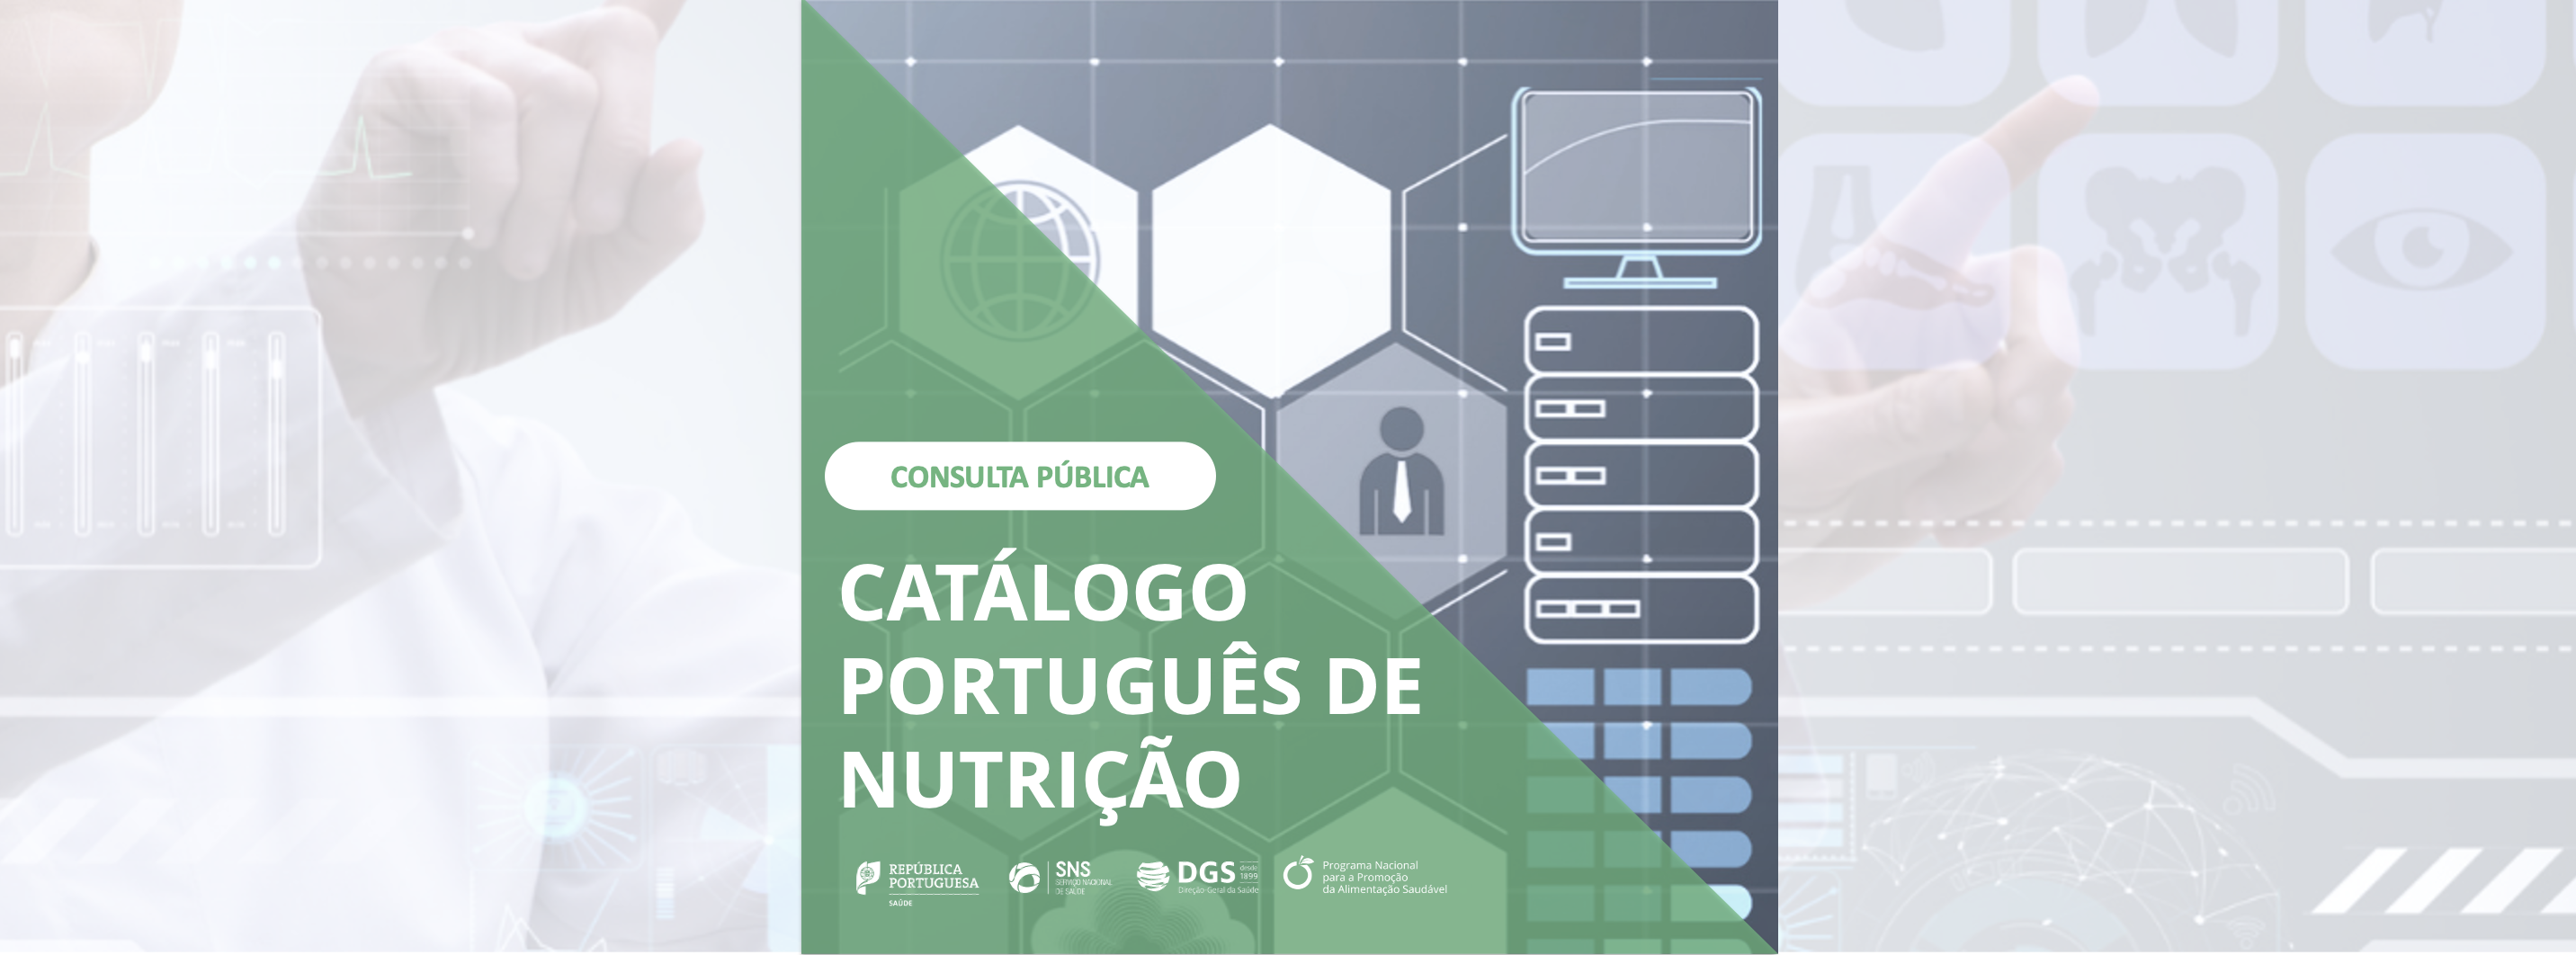 Catálogo Português de Nutrição V3.0 em consulta pública